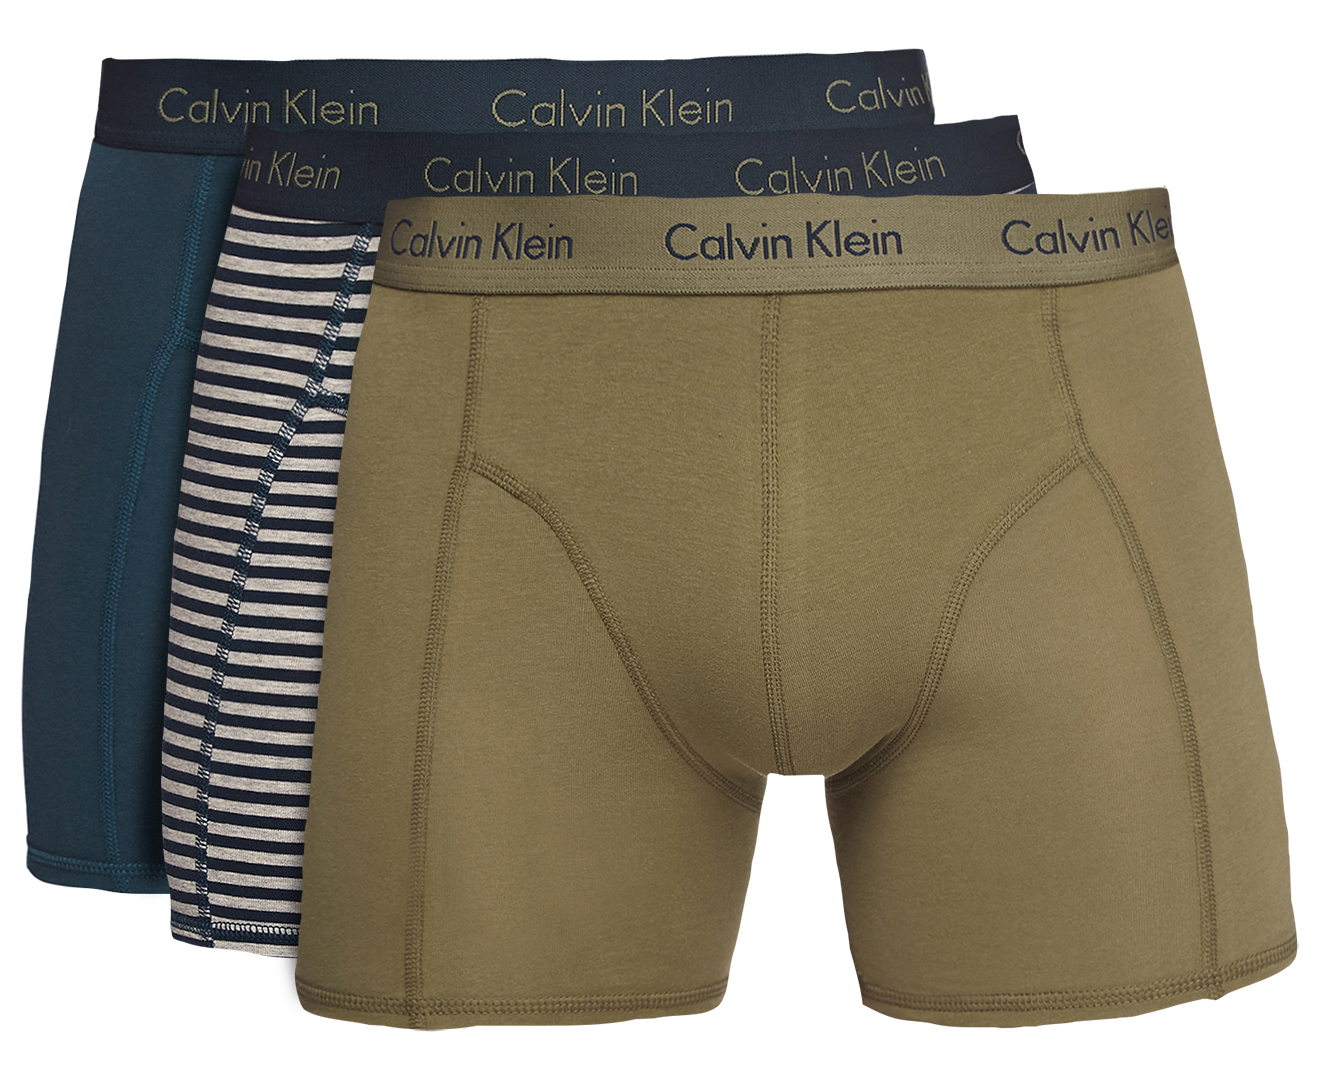 Calvin Klein Men's Cotton Stretch Boxer Briefs 3-Pack - Spellbound ...